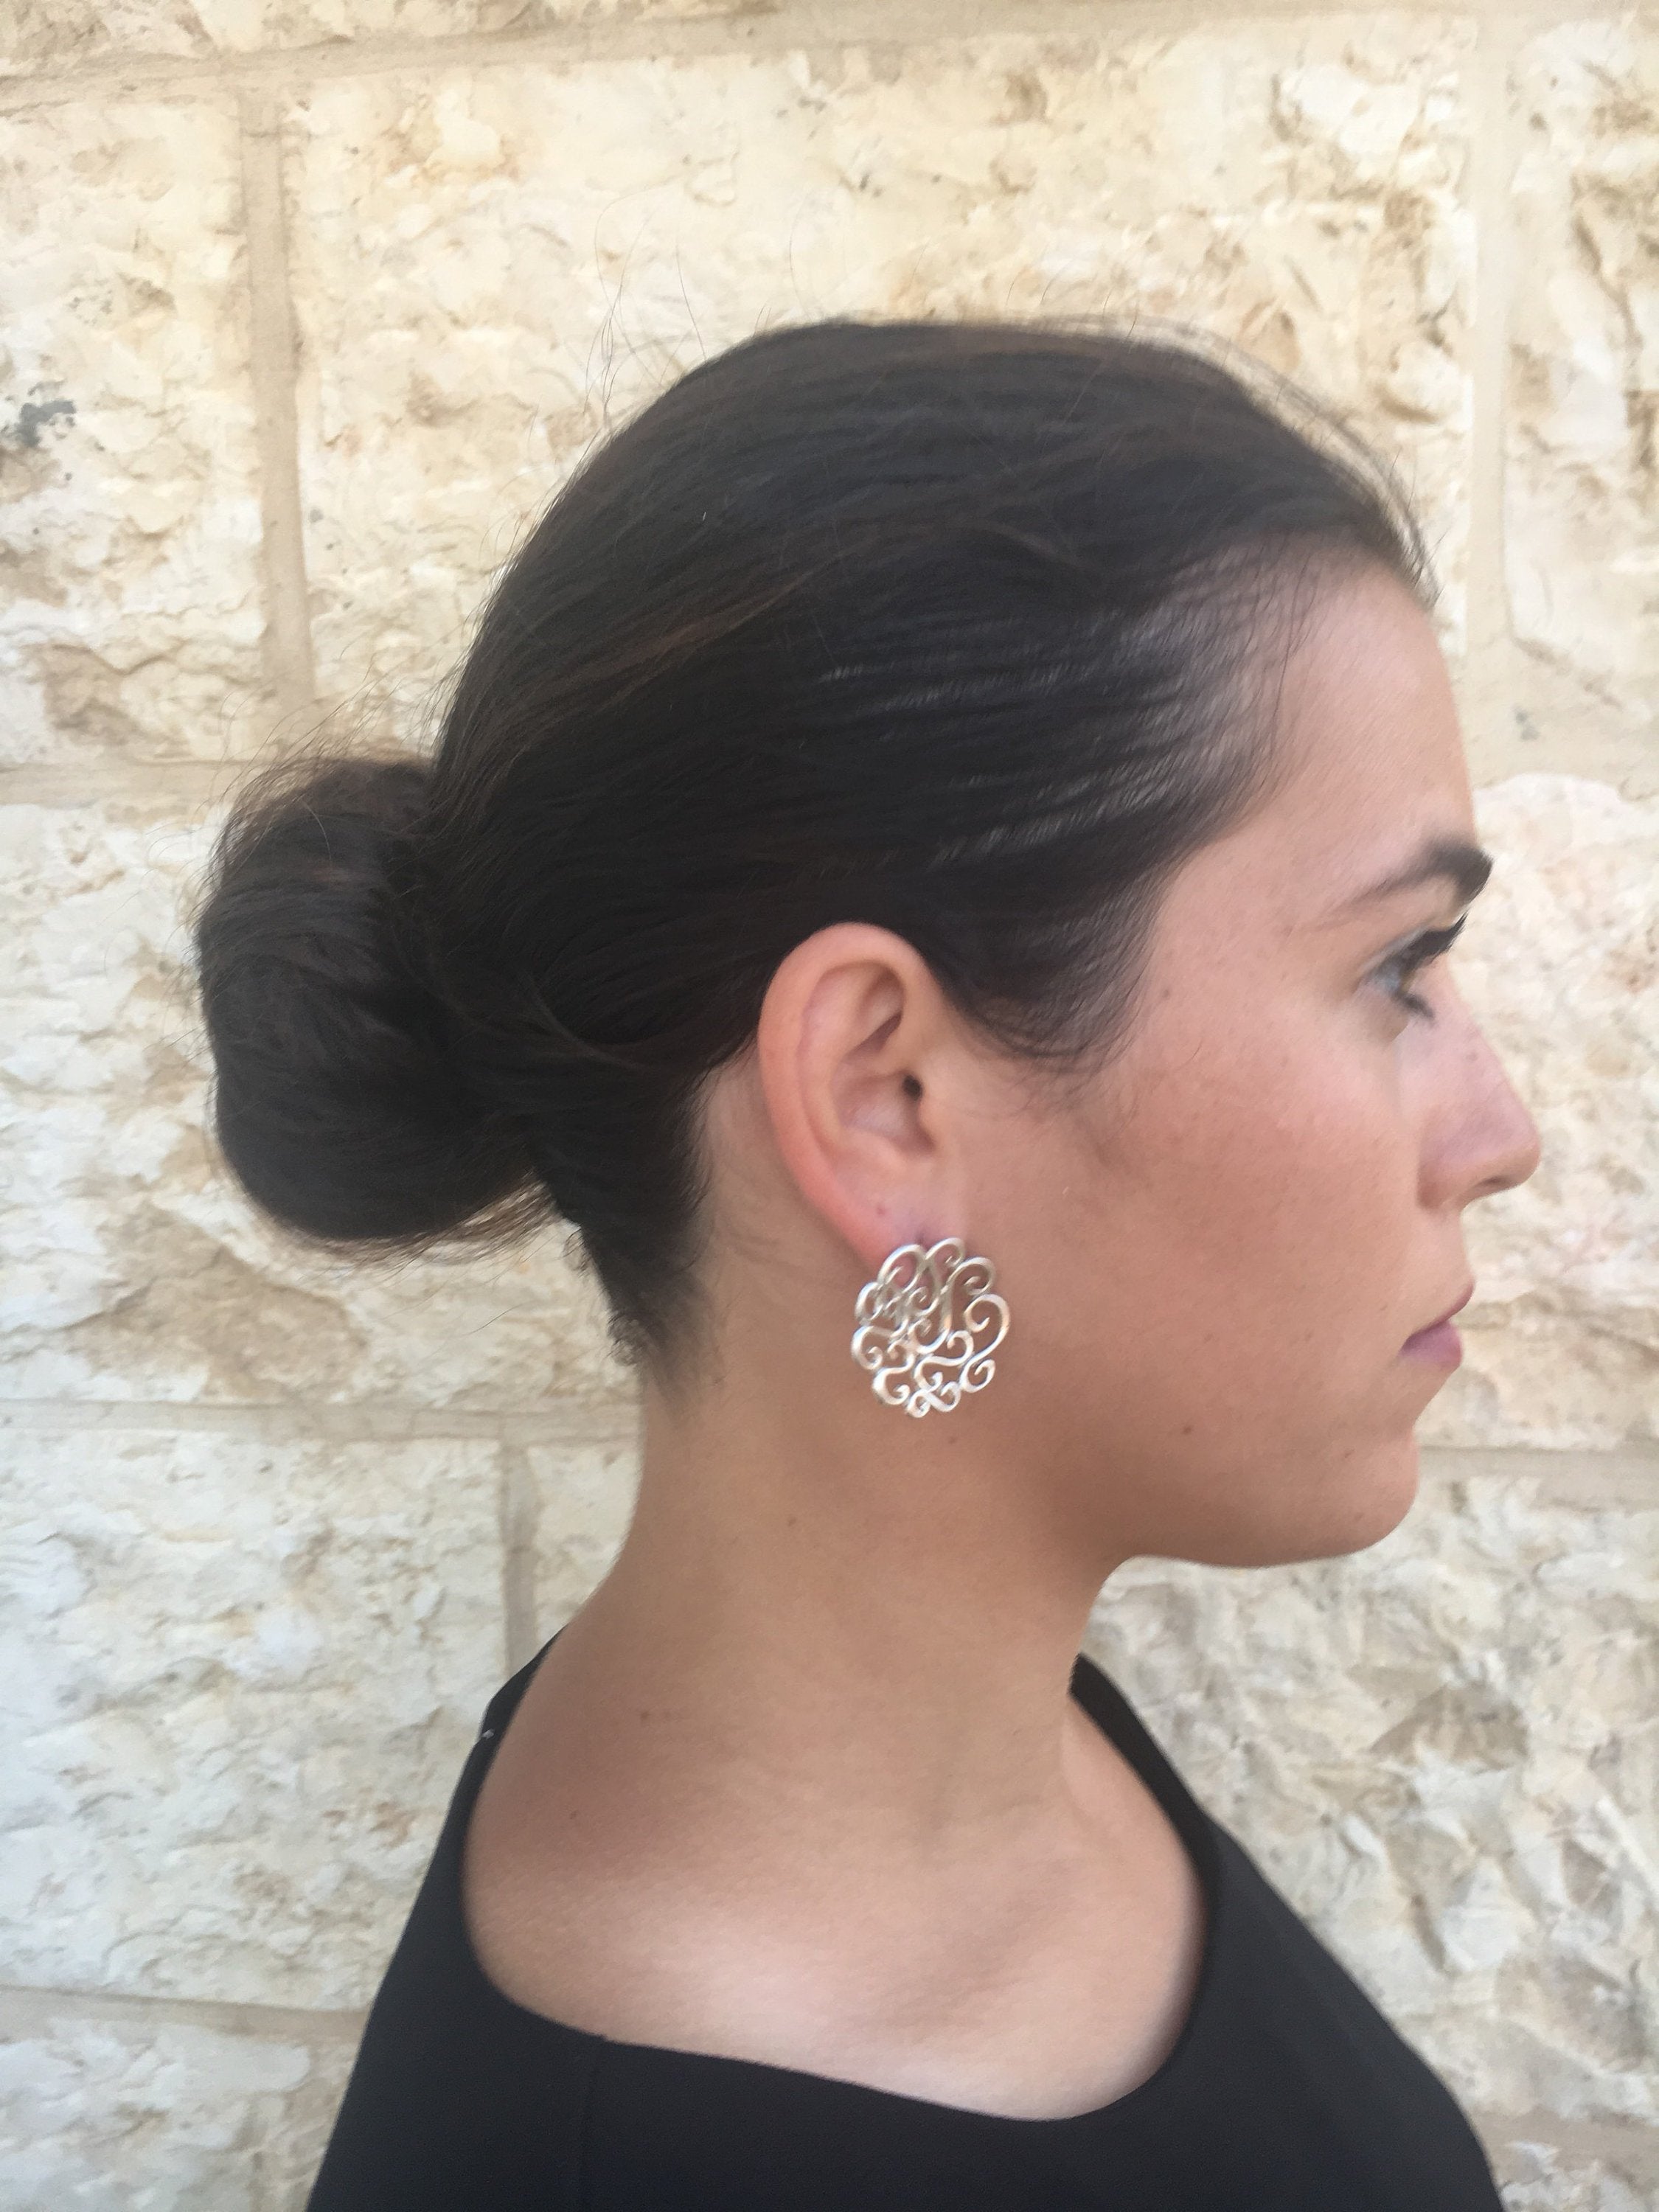 Flower Earrings, Silver Earrings, Large Stud Earrings, Artistic Earrings, Statement Earrings, Swirl Earrings,Artisan Earrings, Stud Earrings